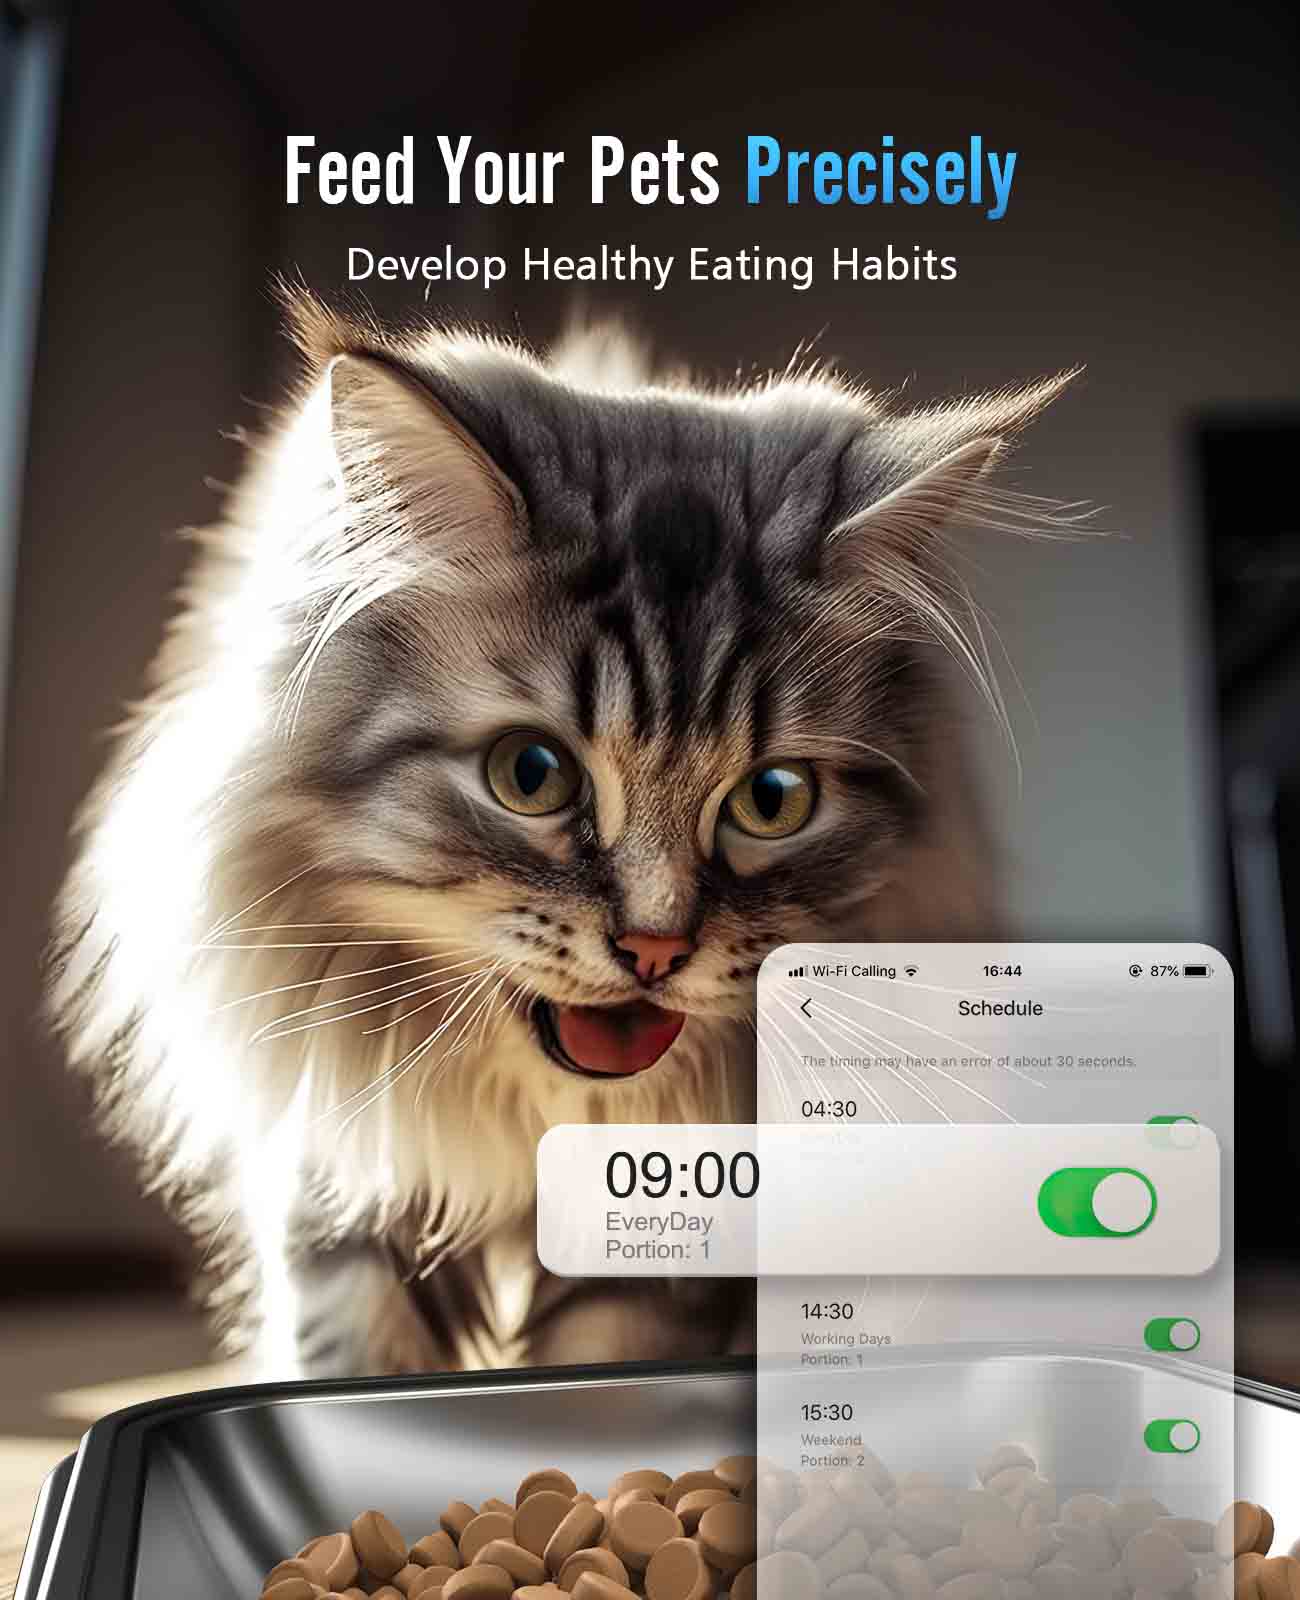 
                  
                    5G Wi-Fi가 있는 Oneisall 자동 고양이 사료 디스펜서, 고양이 2마리를 위한 자동 고양이 사료 공급기, APP 제어 기능이 있는 20컵 시간 제한 건조 식품 디스펜서
                  
                